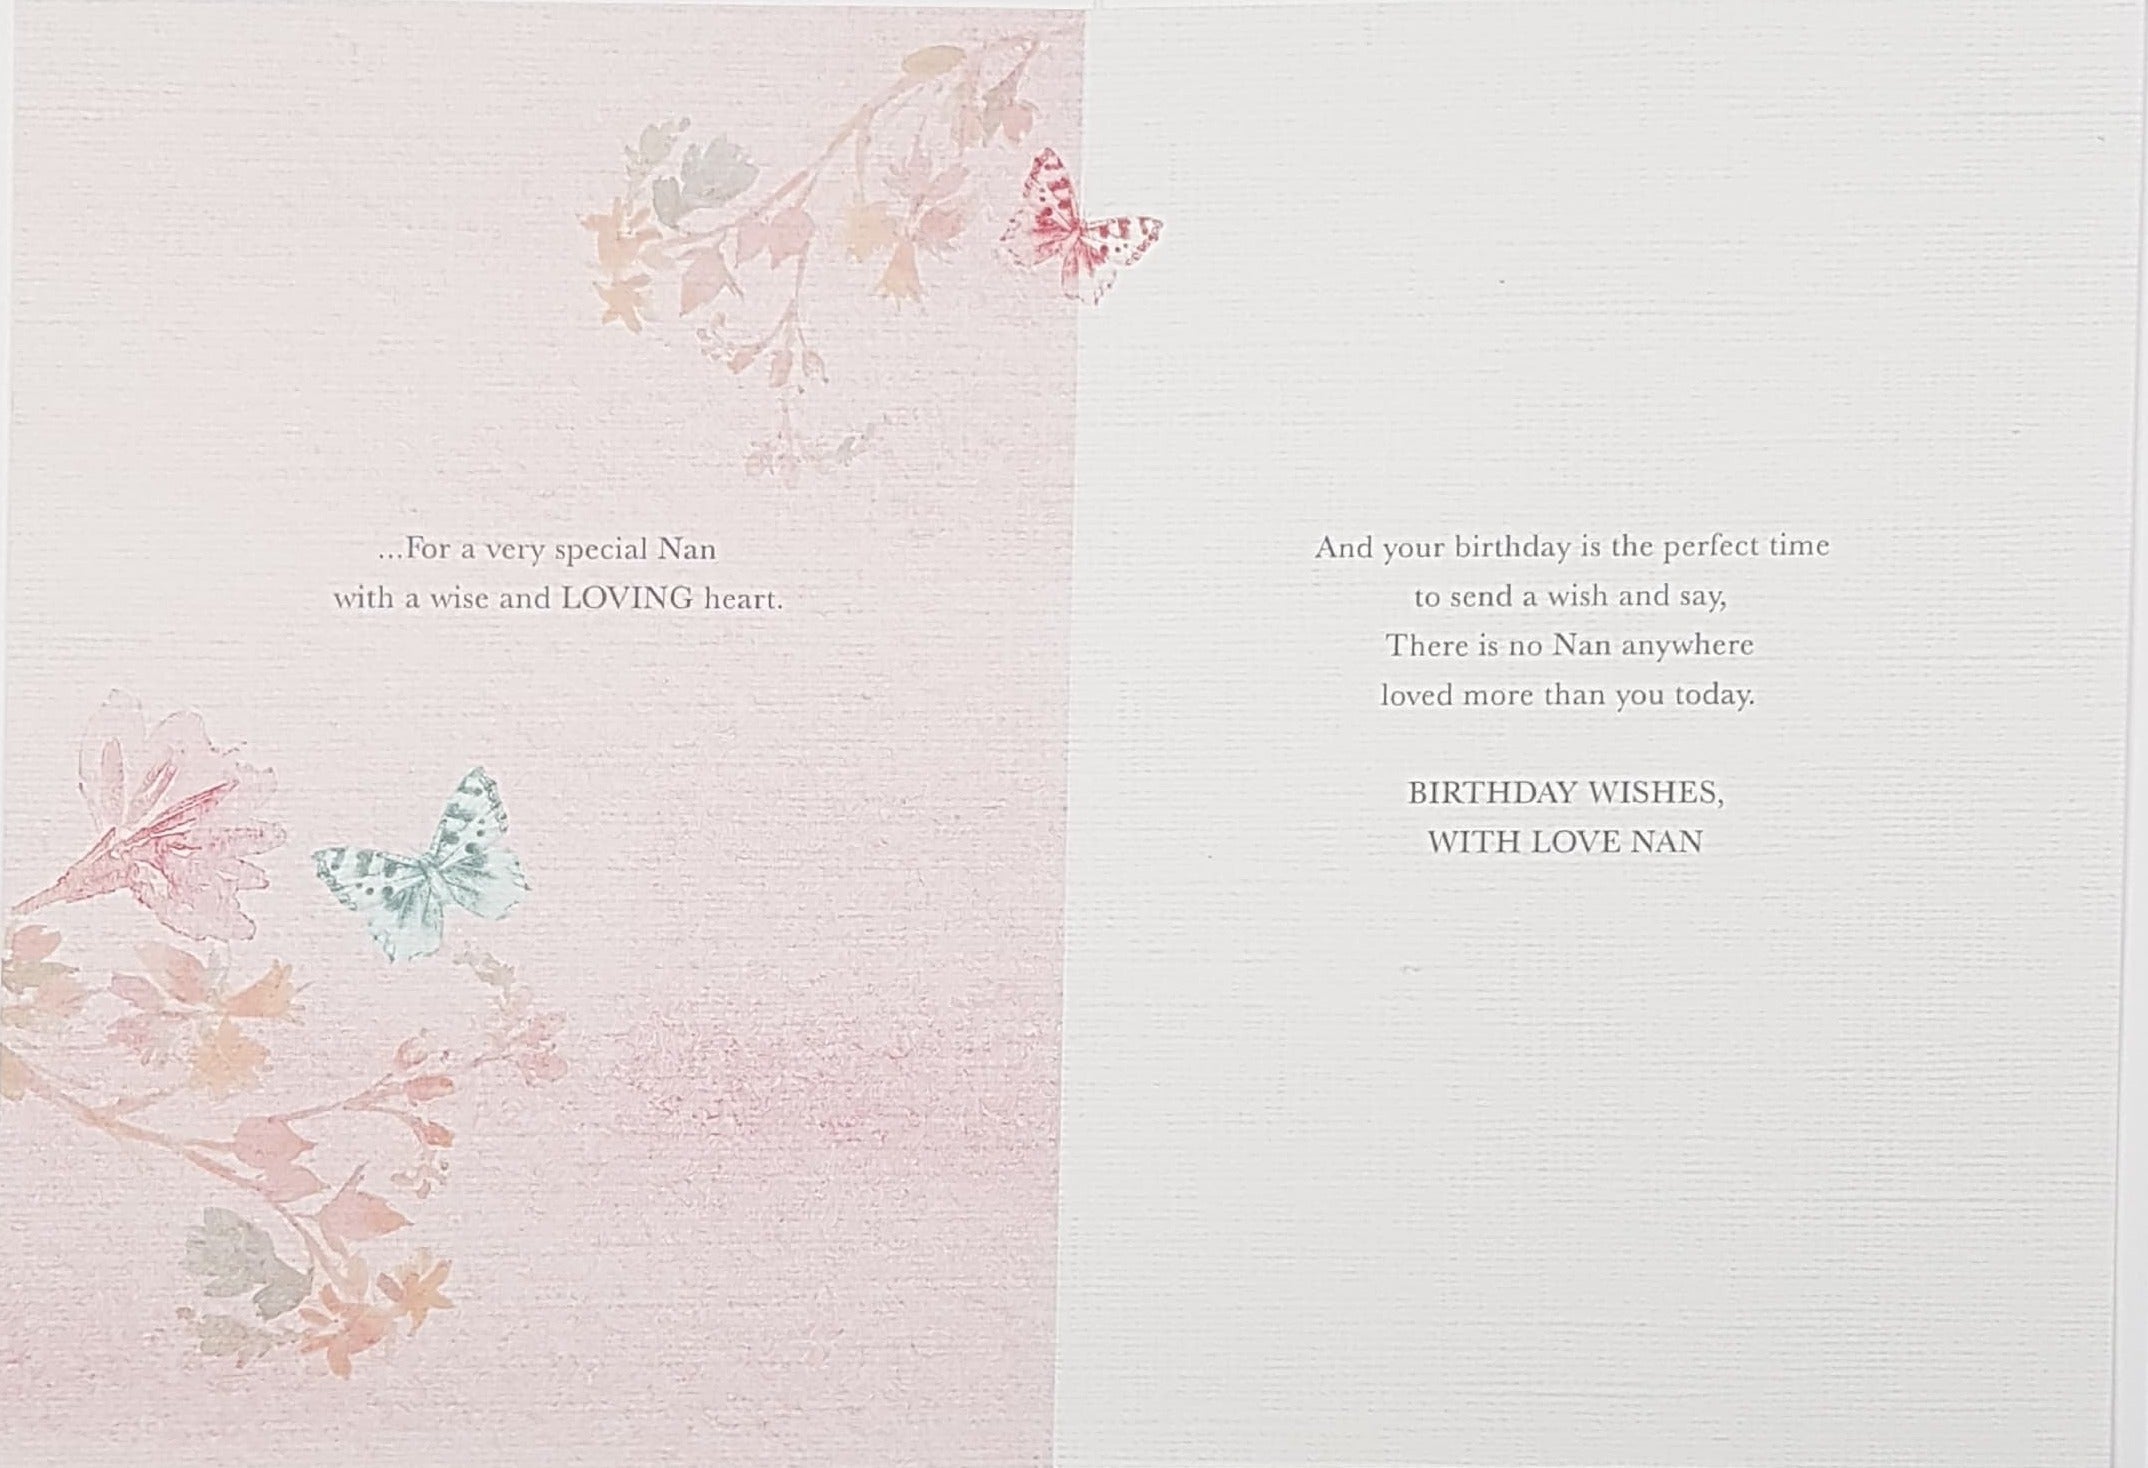 Birthday Card - Nan / A Gold Floral Motive & Butterflies